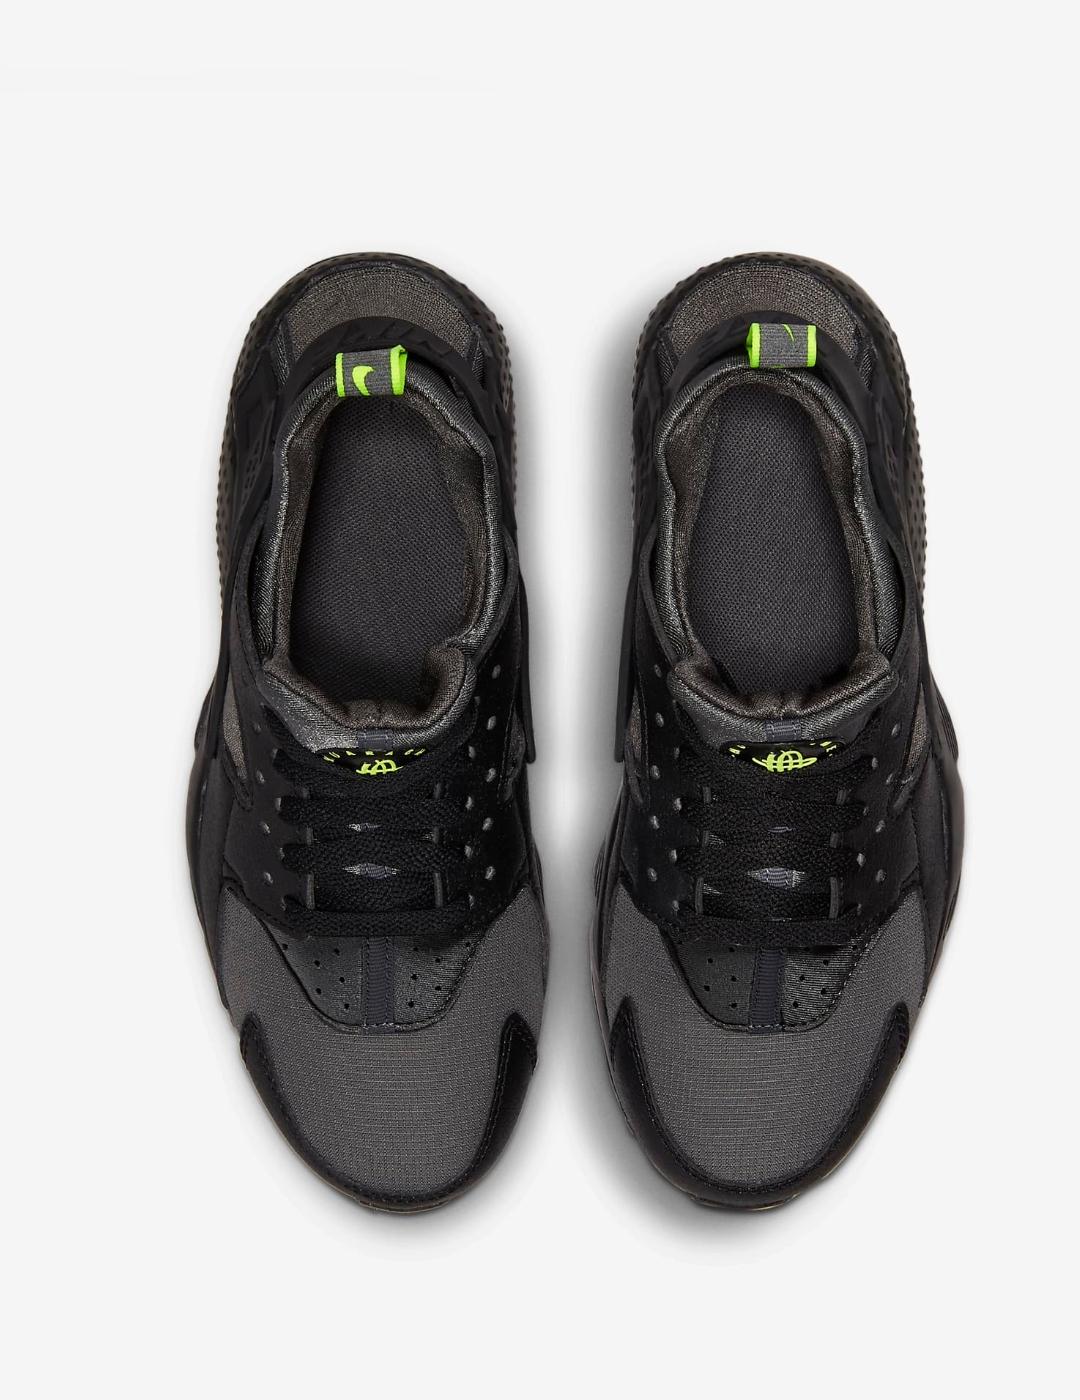 Factura Redondear a la baja binario Zapatillas Nike Huarache Run GS Negras para niño